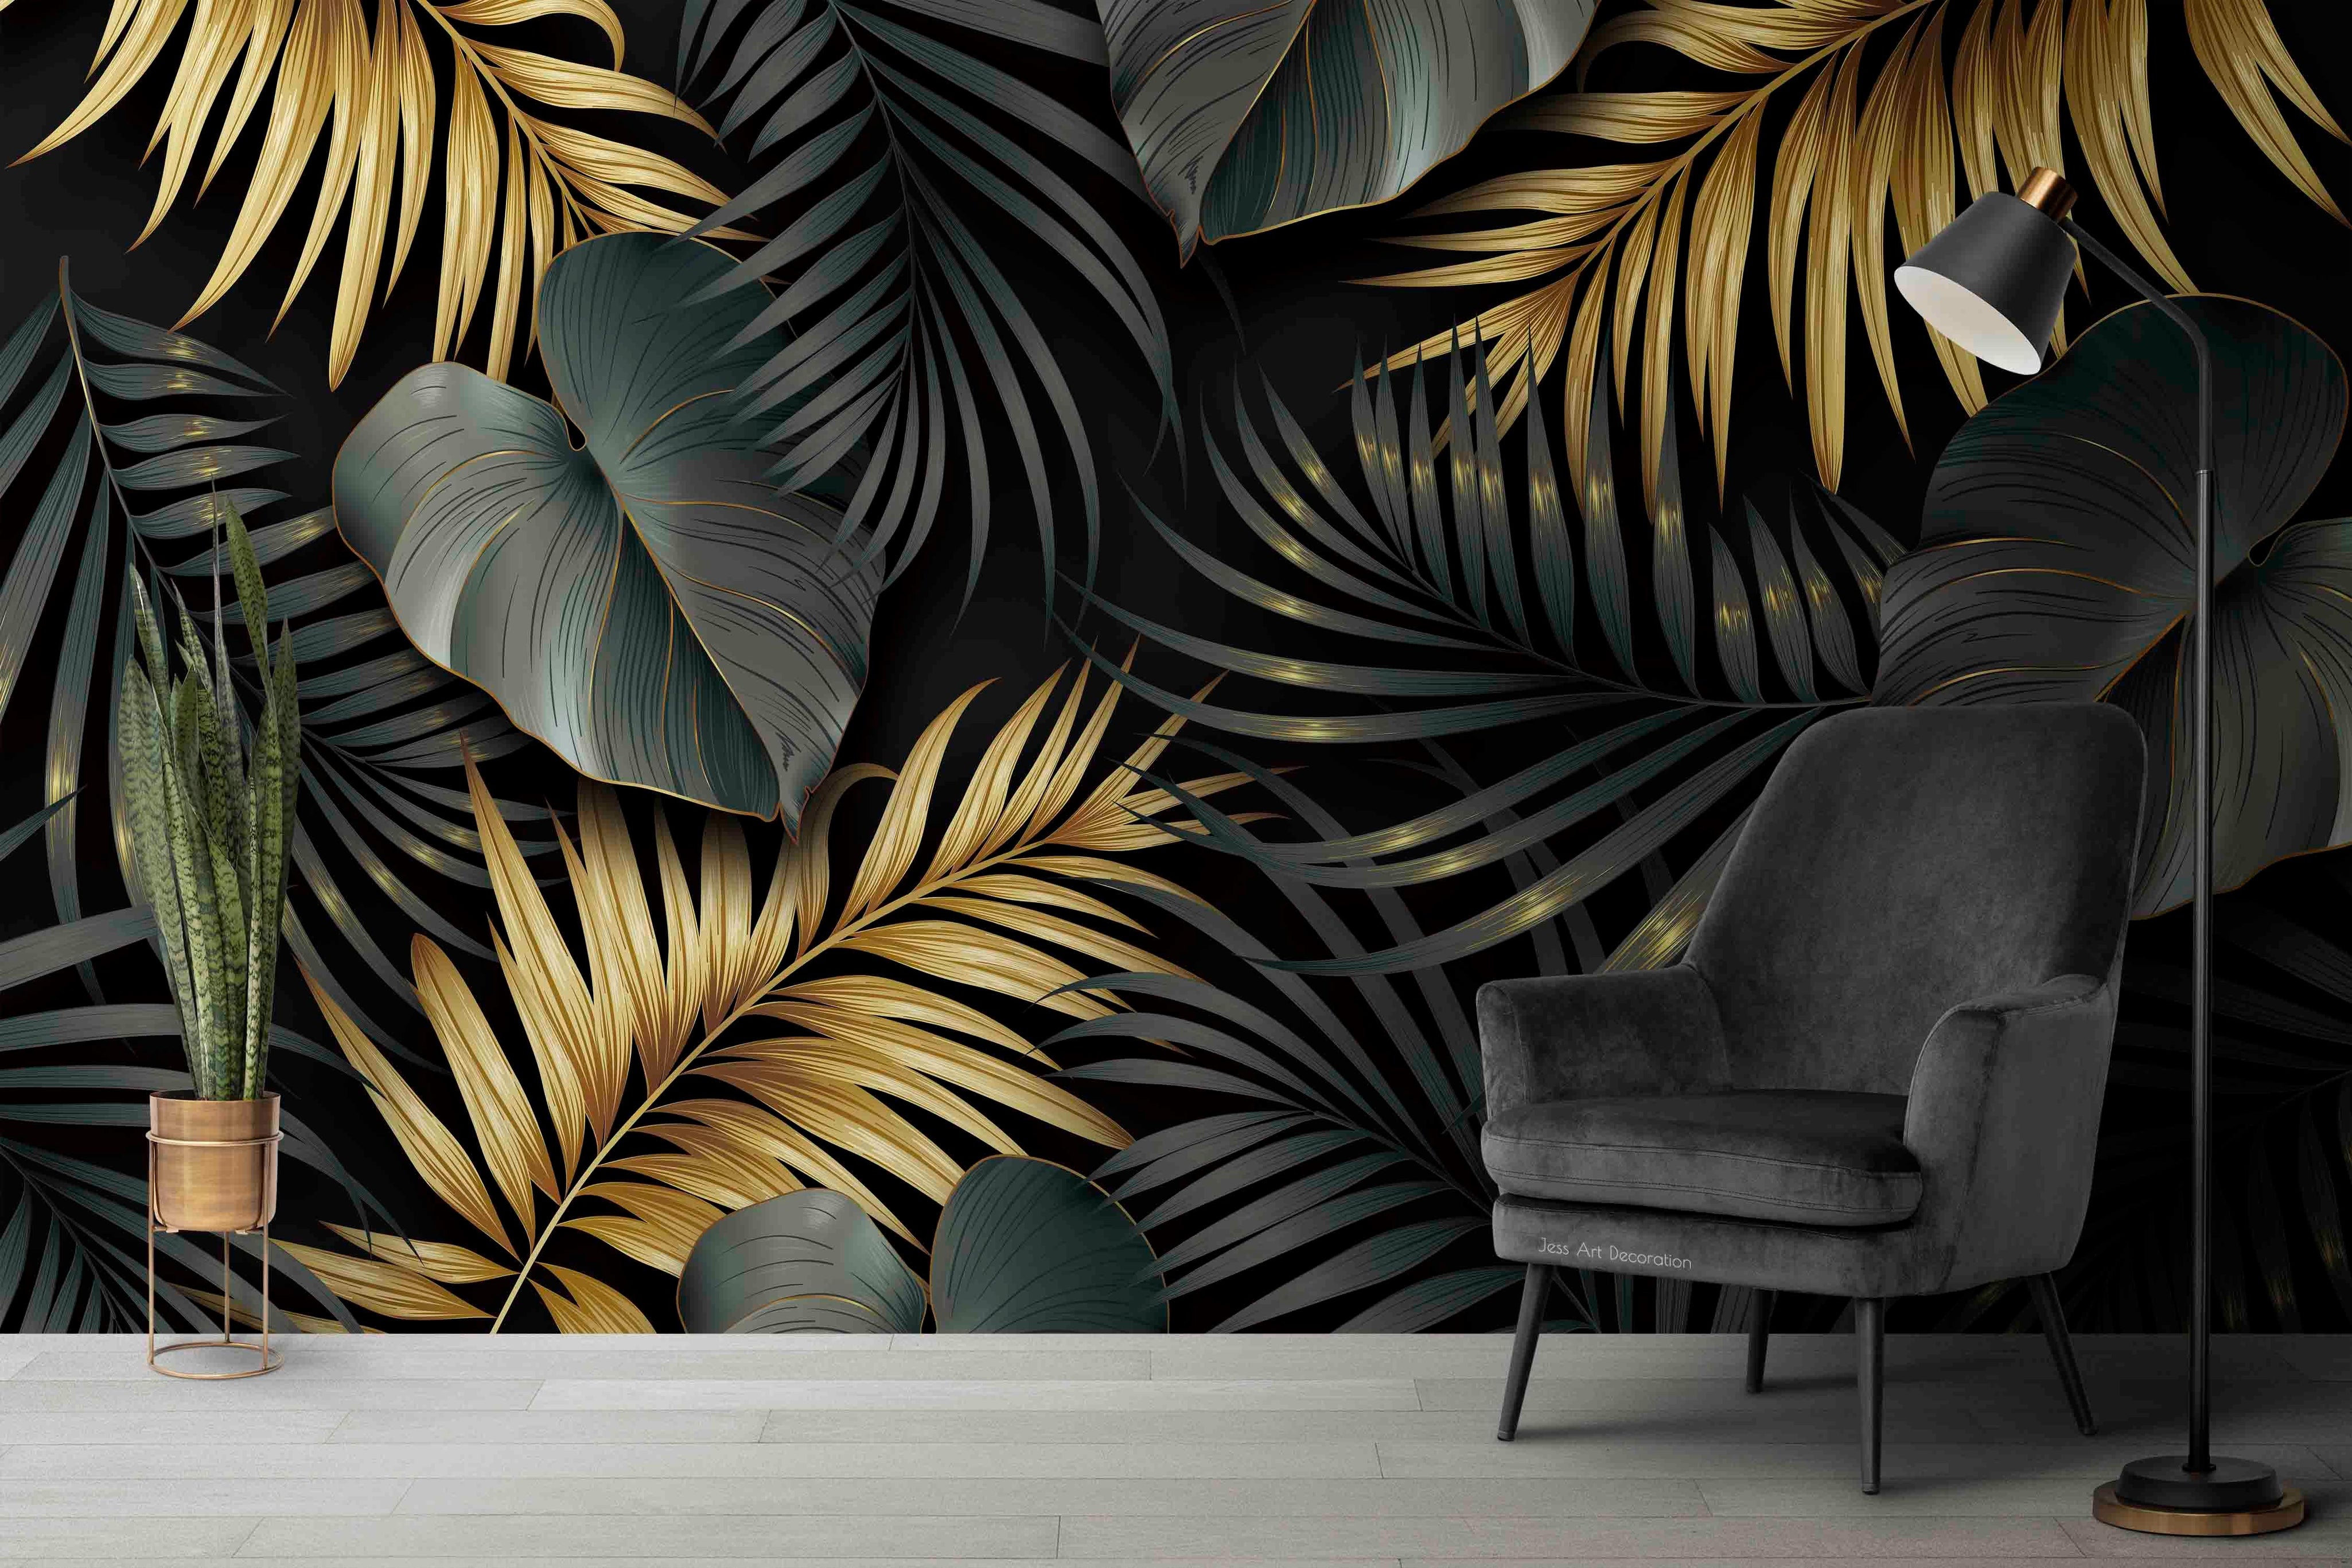 3D Tropical Plant Green Golden Leaf Wall Mural Wallpaper GD 3070- Jess Art Decoration